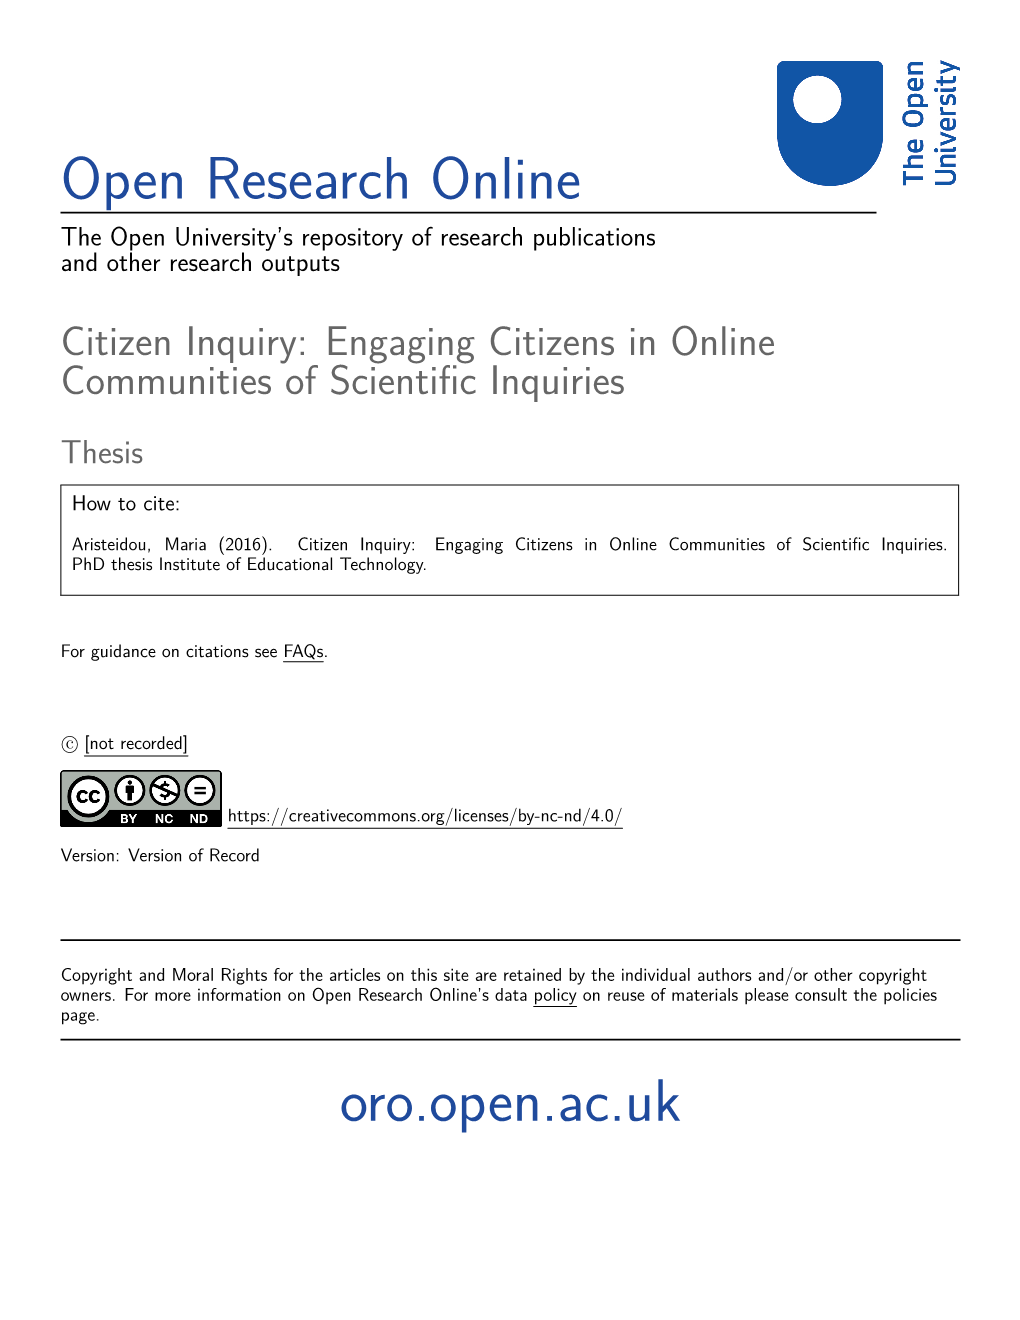 Citizen Inquiry: Engaging Citizens in Online Communities of Scientiﬁc Inquiries